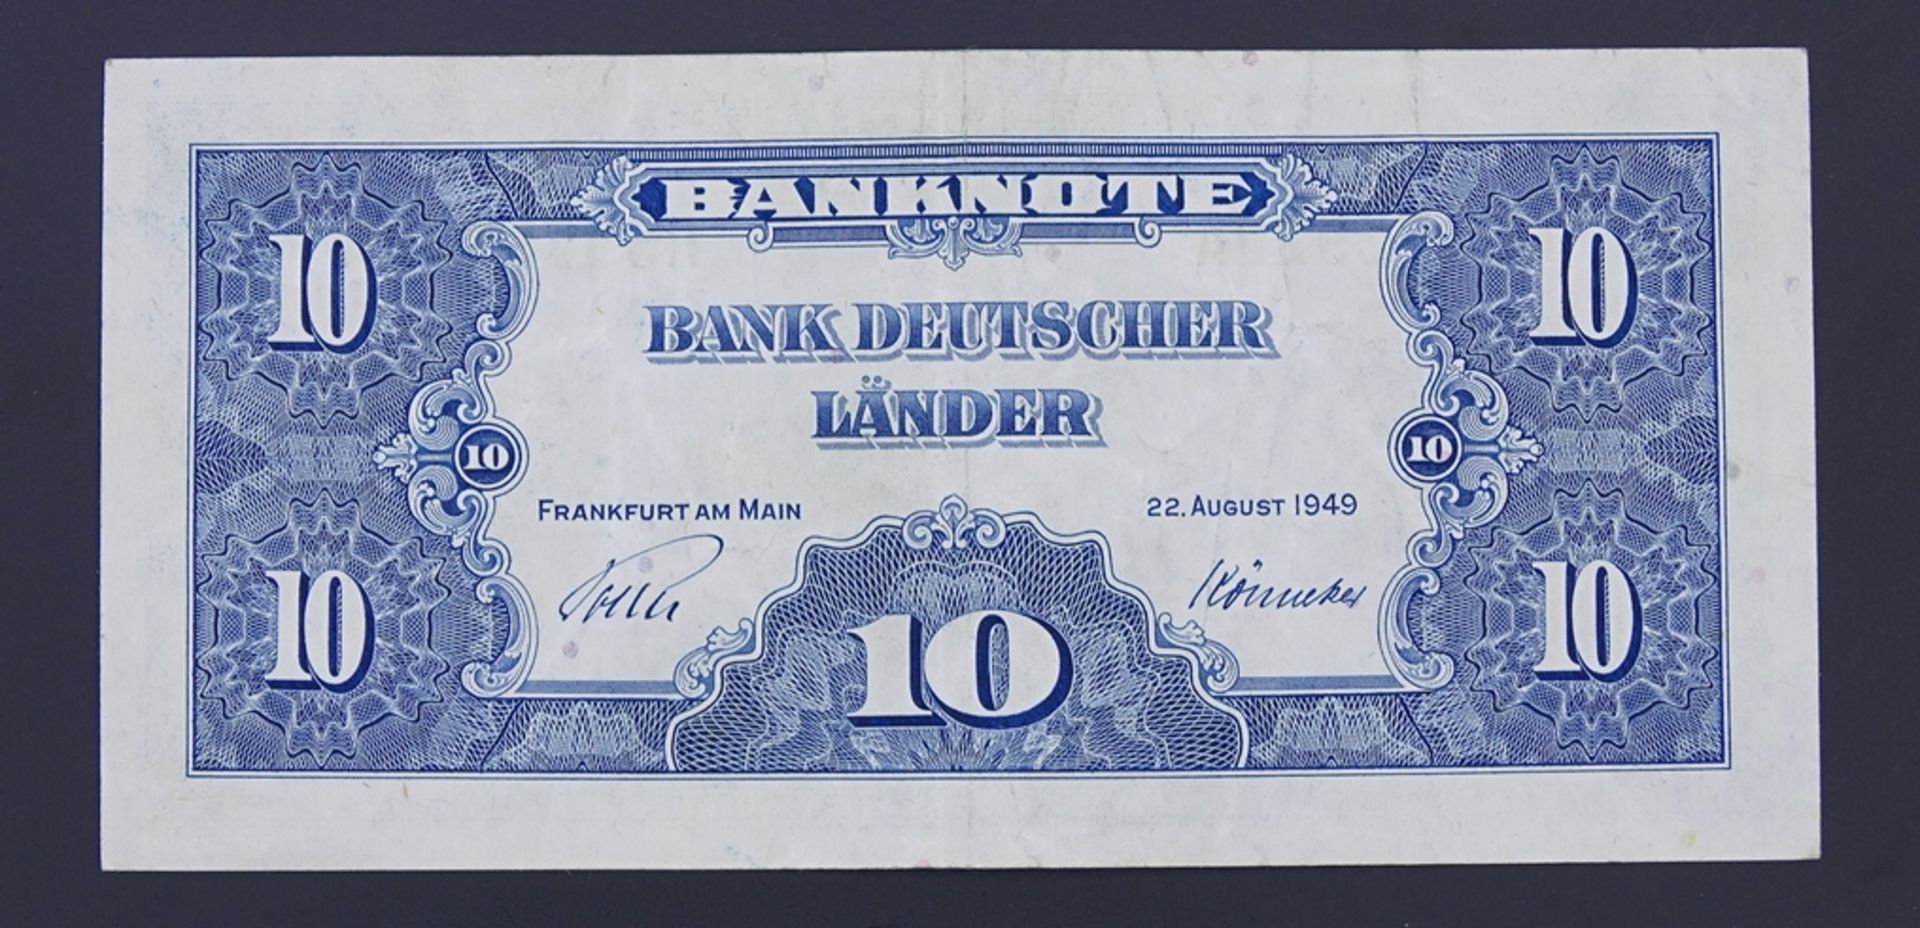 Zehn Deutsche Mark Serie 1949 - Image 2 of 2